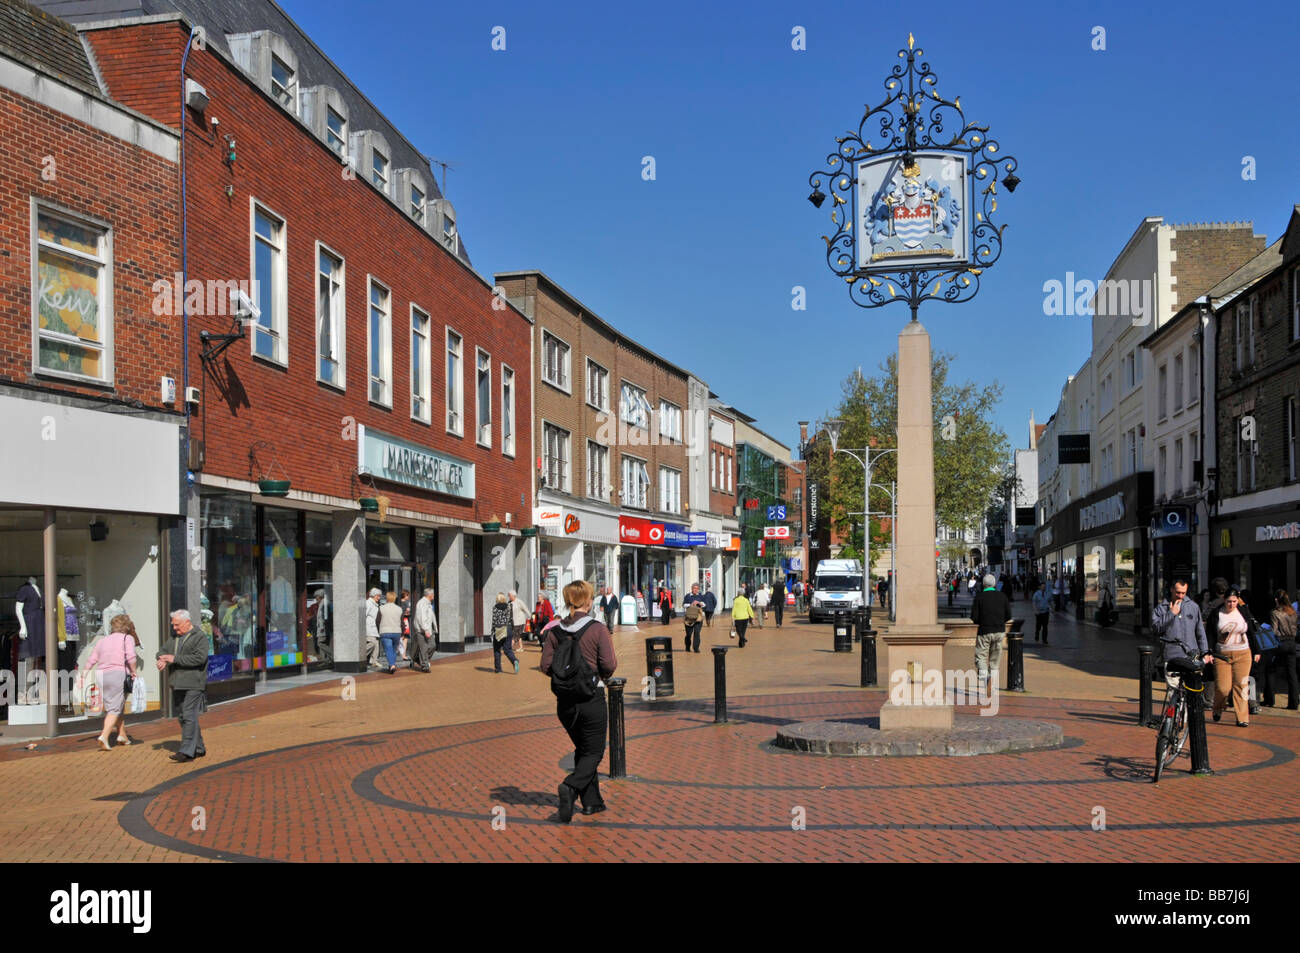 Centre-ville de Chelmsford panneau exemple de boutiques piétonnes High Street sur ciel bleu soleil jour de printemps Essex Angleterre Royaume-Uni Banque D'Images